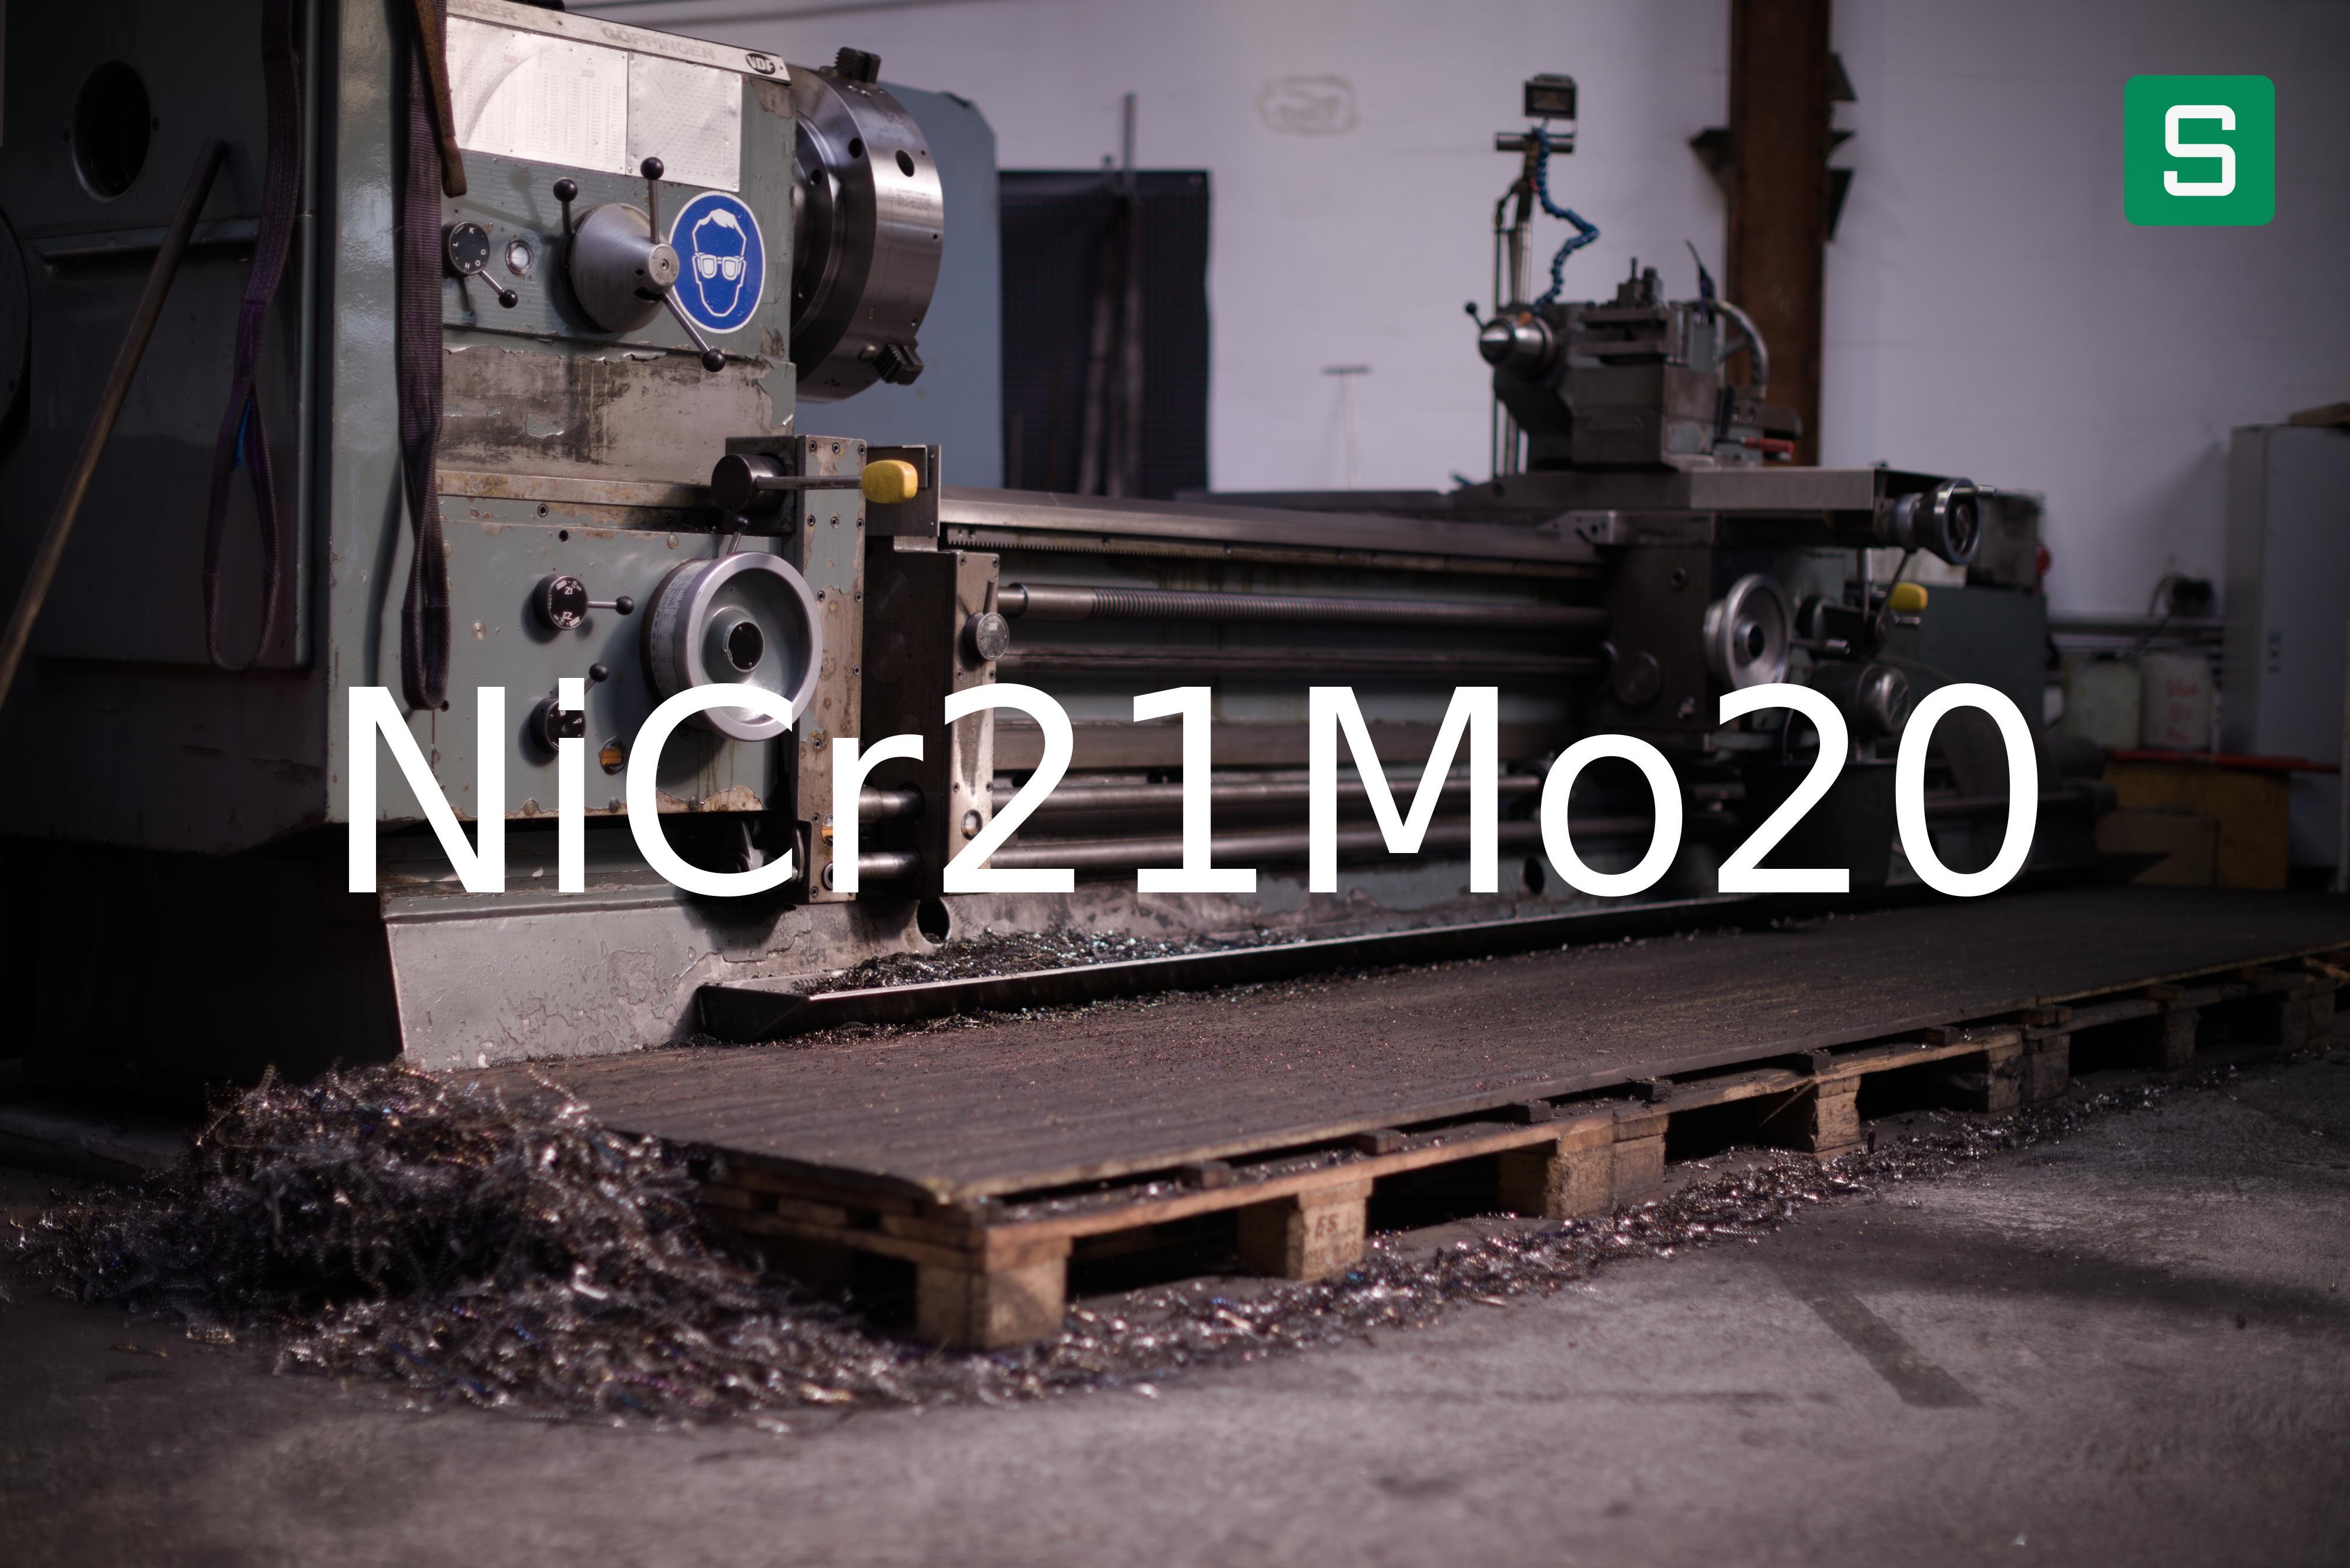 Steel Material: NiCr21Mo20